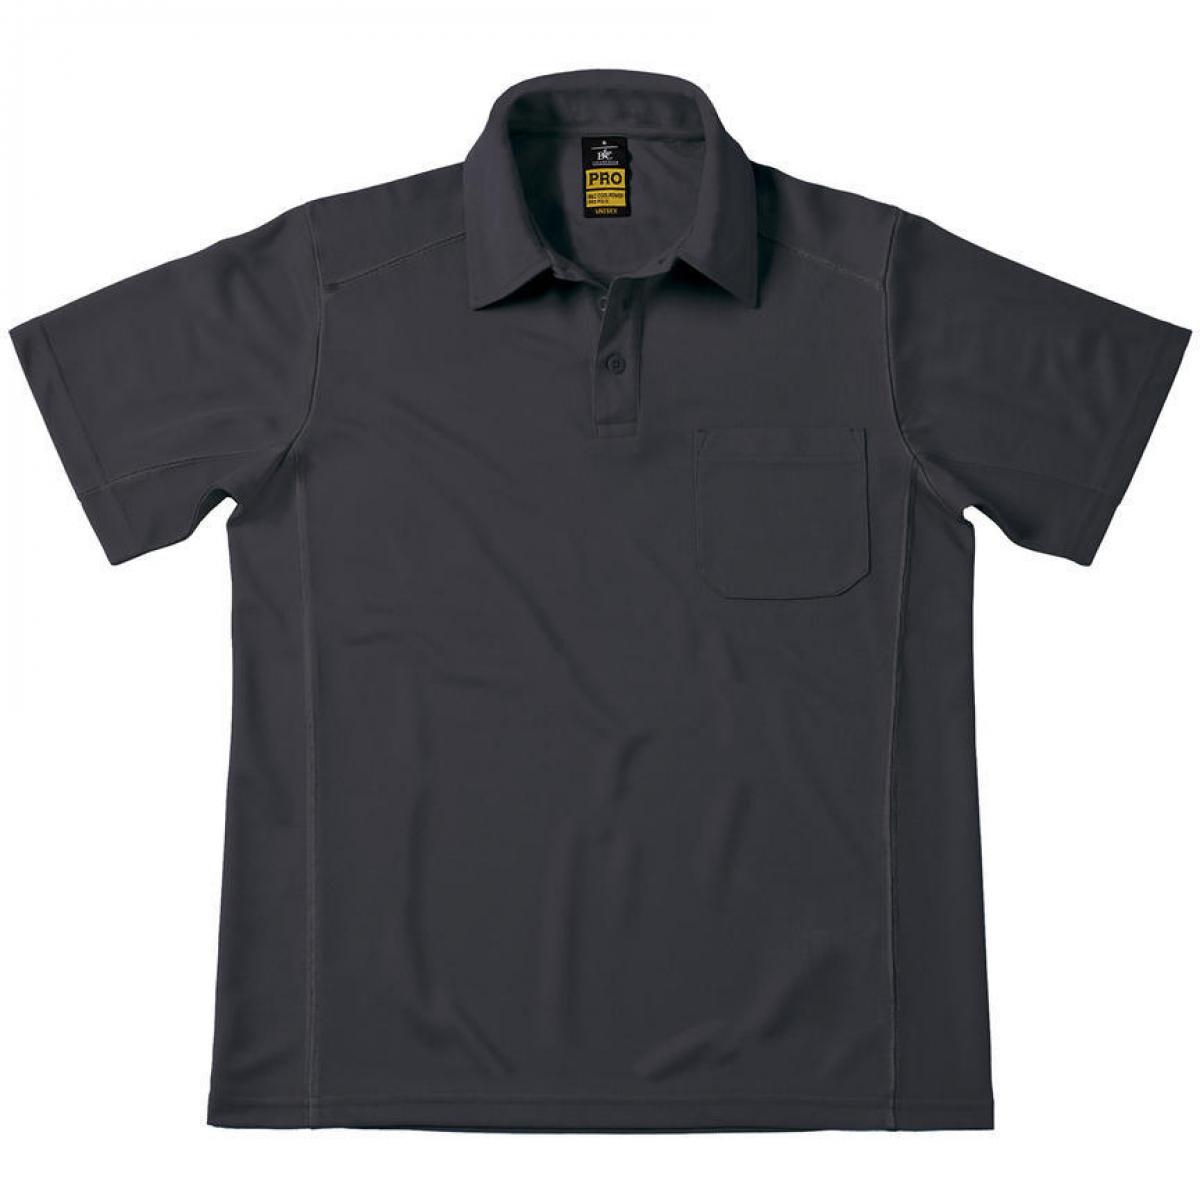 Hersteller: B&C Pro Collection Herstellernummer: PUC12 Artikelbezeichnung: Coolpower Pocket Workwear Poloshirt Herren Farbe: Dark Grey